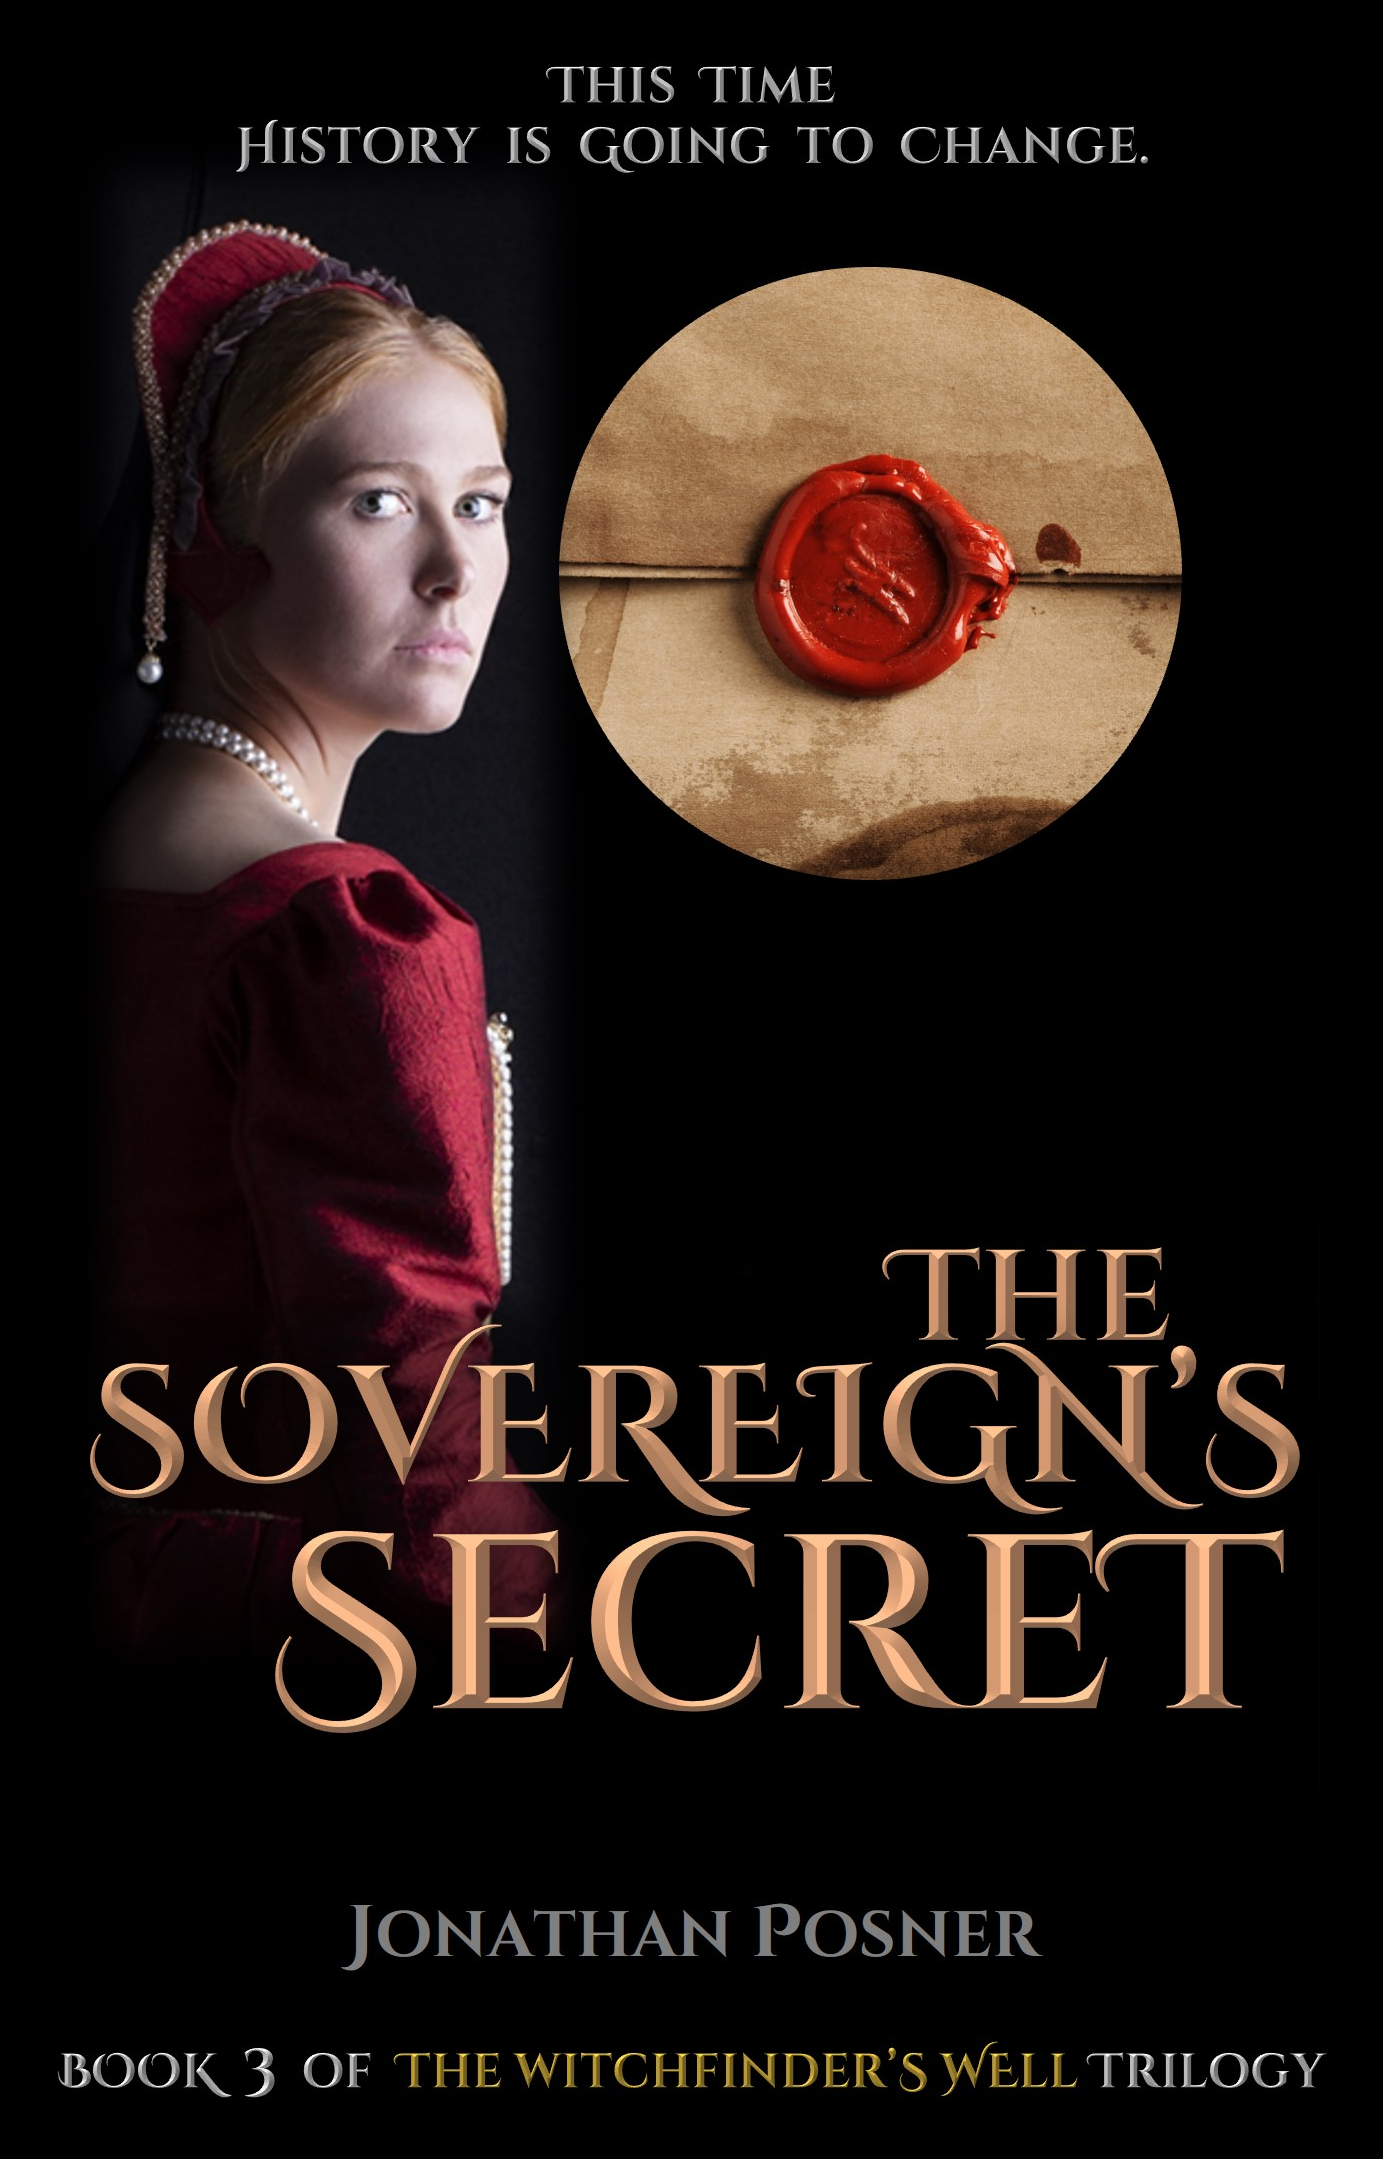 The Sovereign's Secret